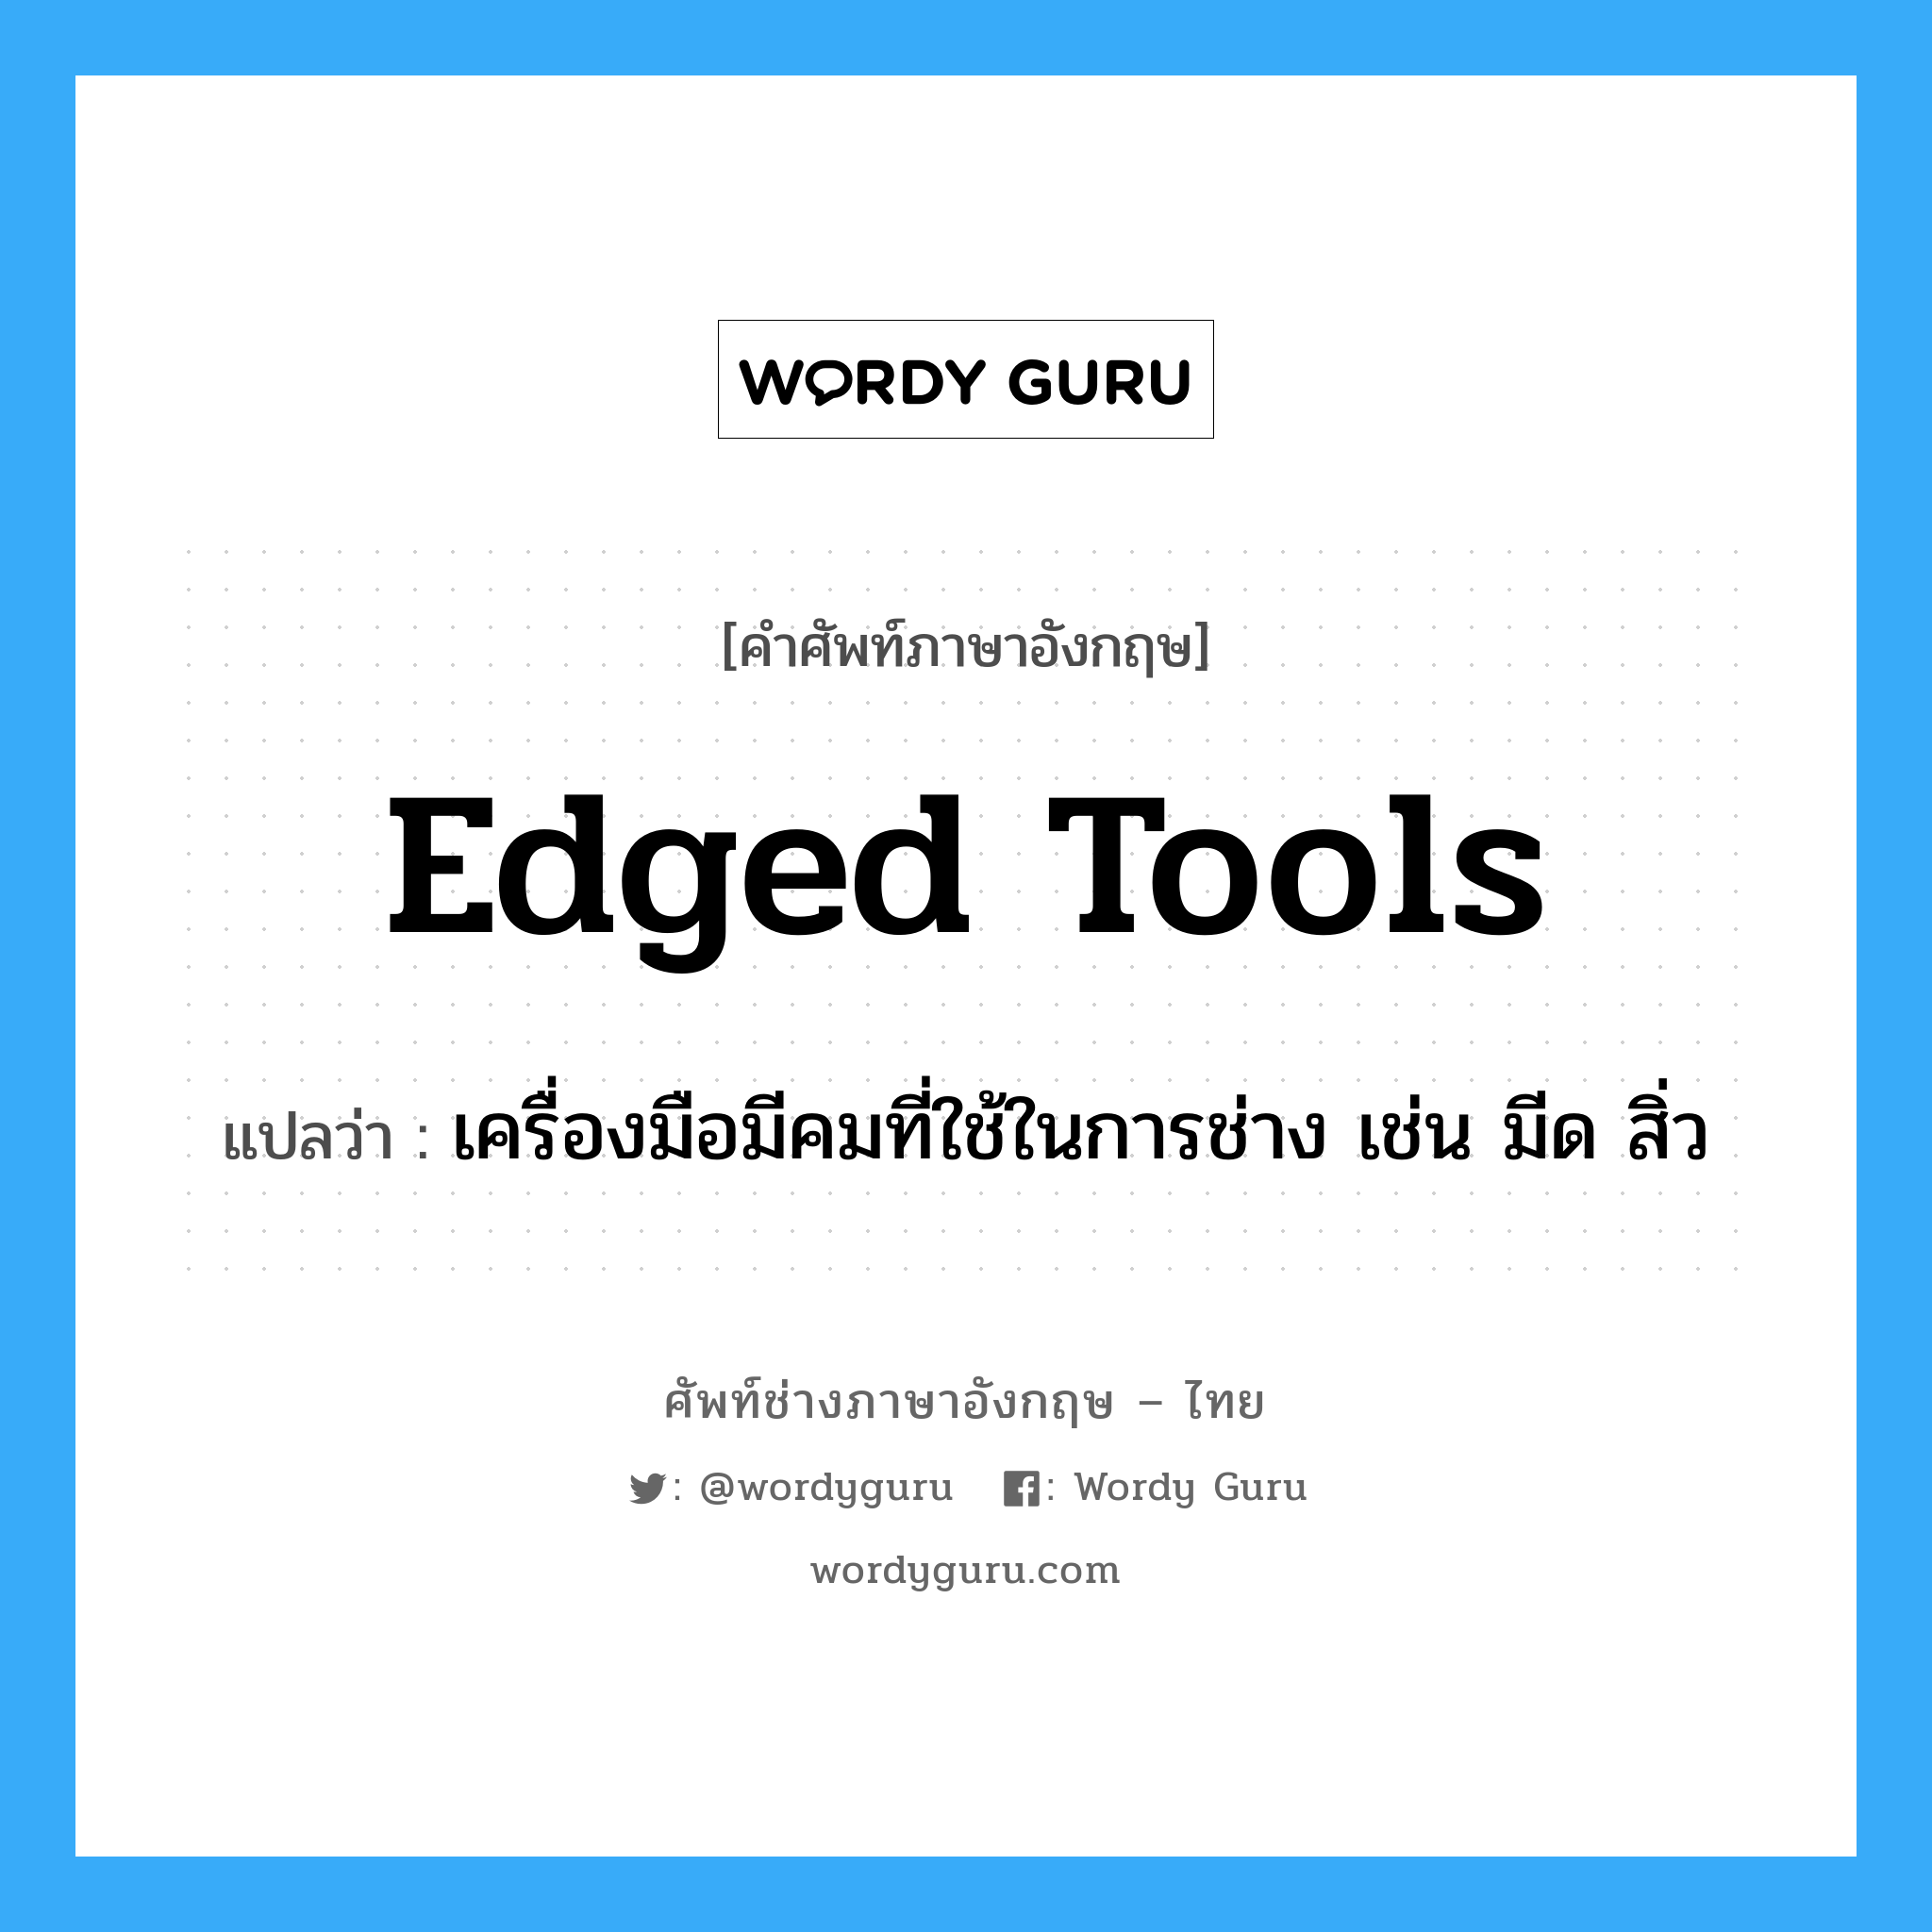 edged tools แปลว่า?, คำศัพท์ช่างภาษาอังกฤษ - ไทย edged tools คำศัพท์ภาษาอังกฤษ edged tools แปลว่า เครื่องมือมีคมที่ใช้ในการช่าง เช่น มีด สิ่ว